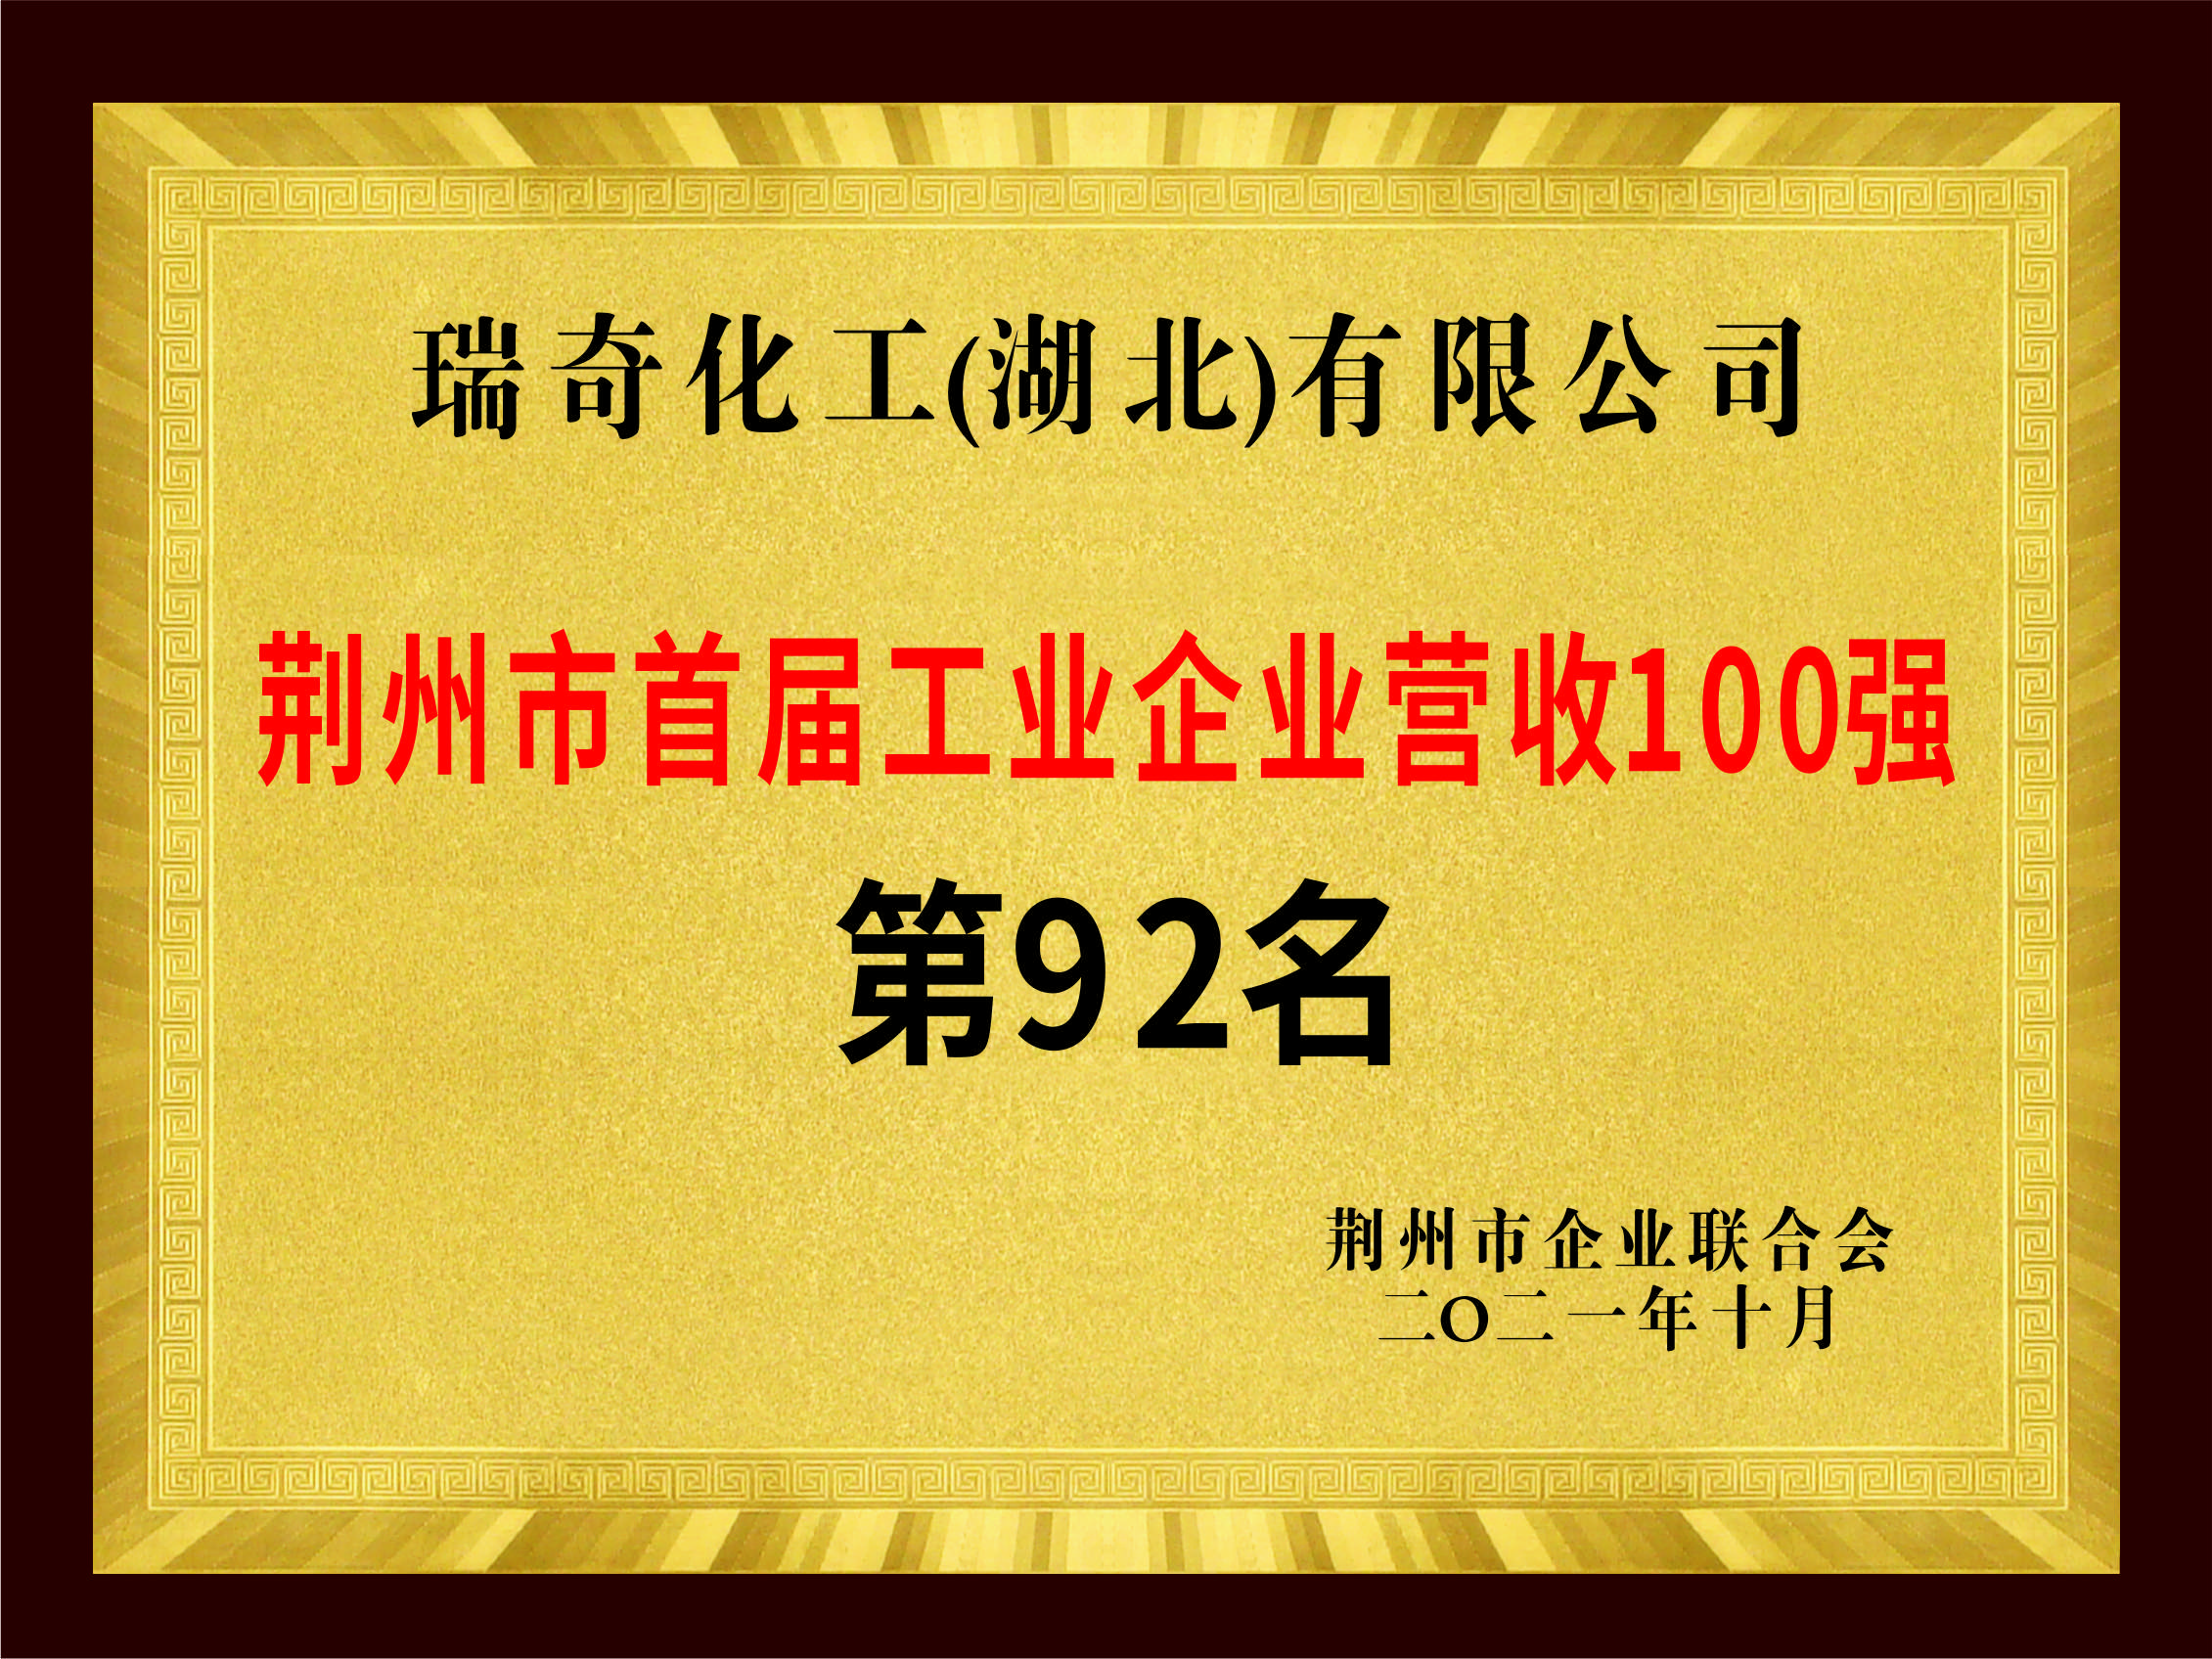 荆州市首届工业企业营收100强 第92名 